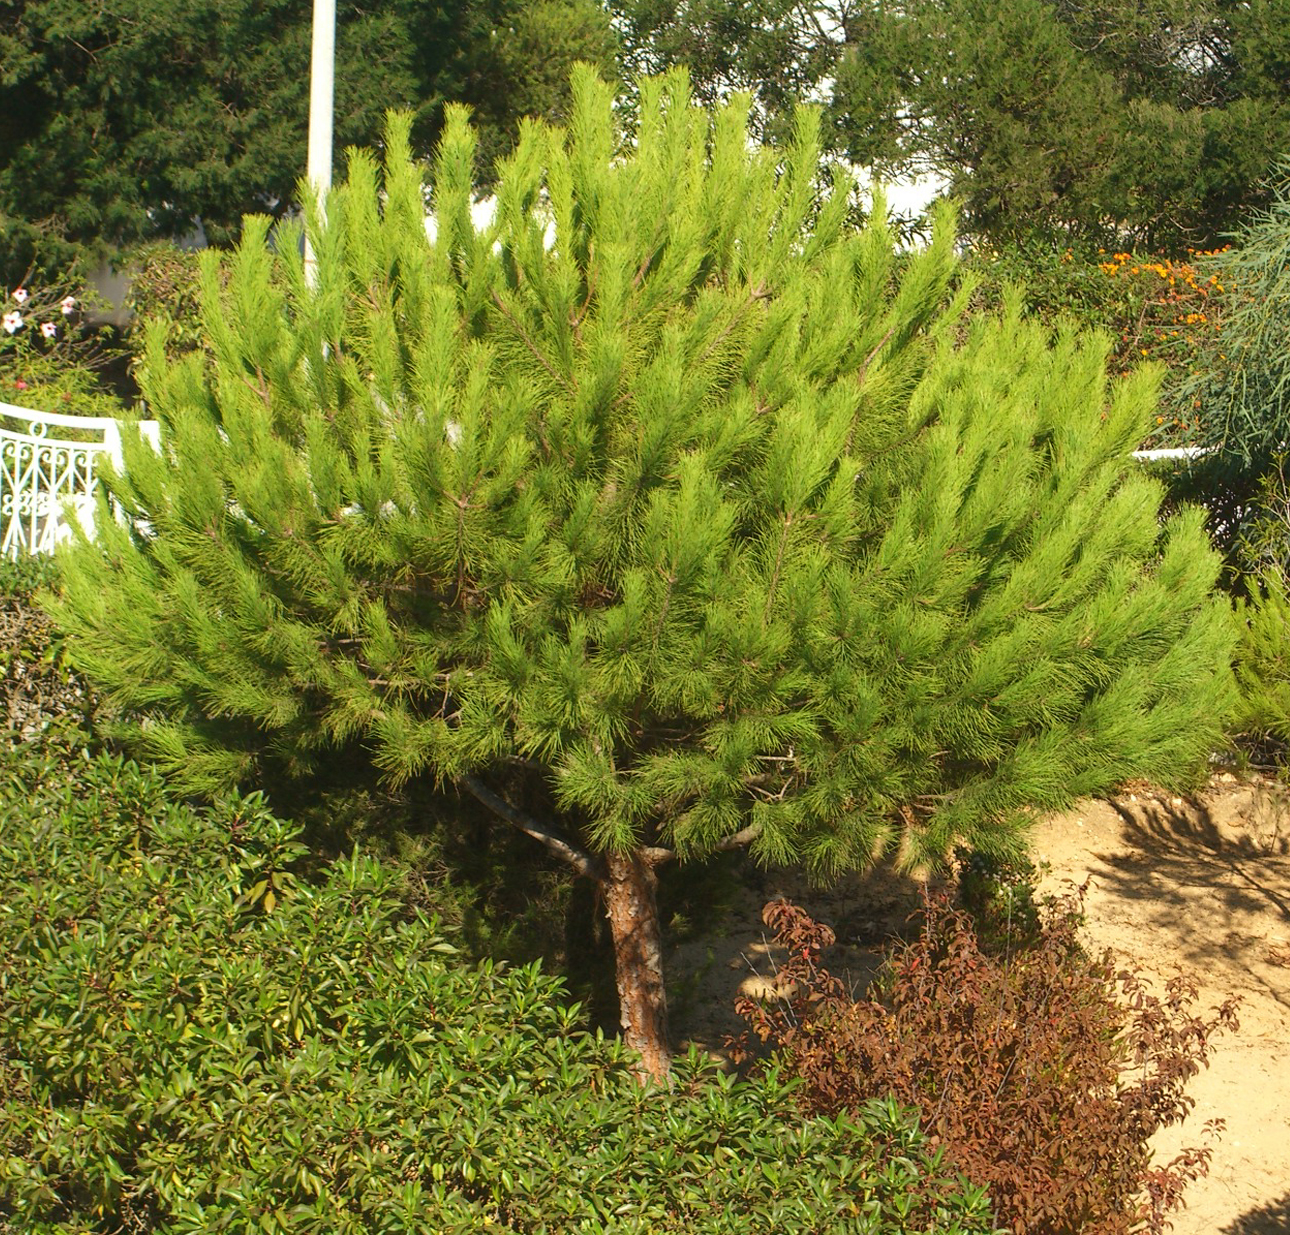 Seedeo® Mittelmeer Pinie (Pinus pinea) Pflanze 1 Jahre Geschenkedition Topf mit Sternen